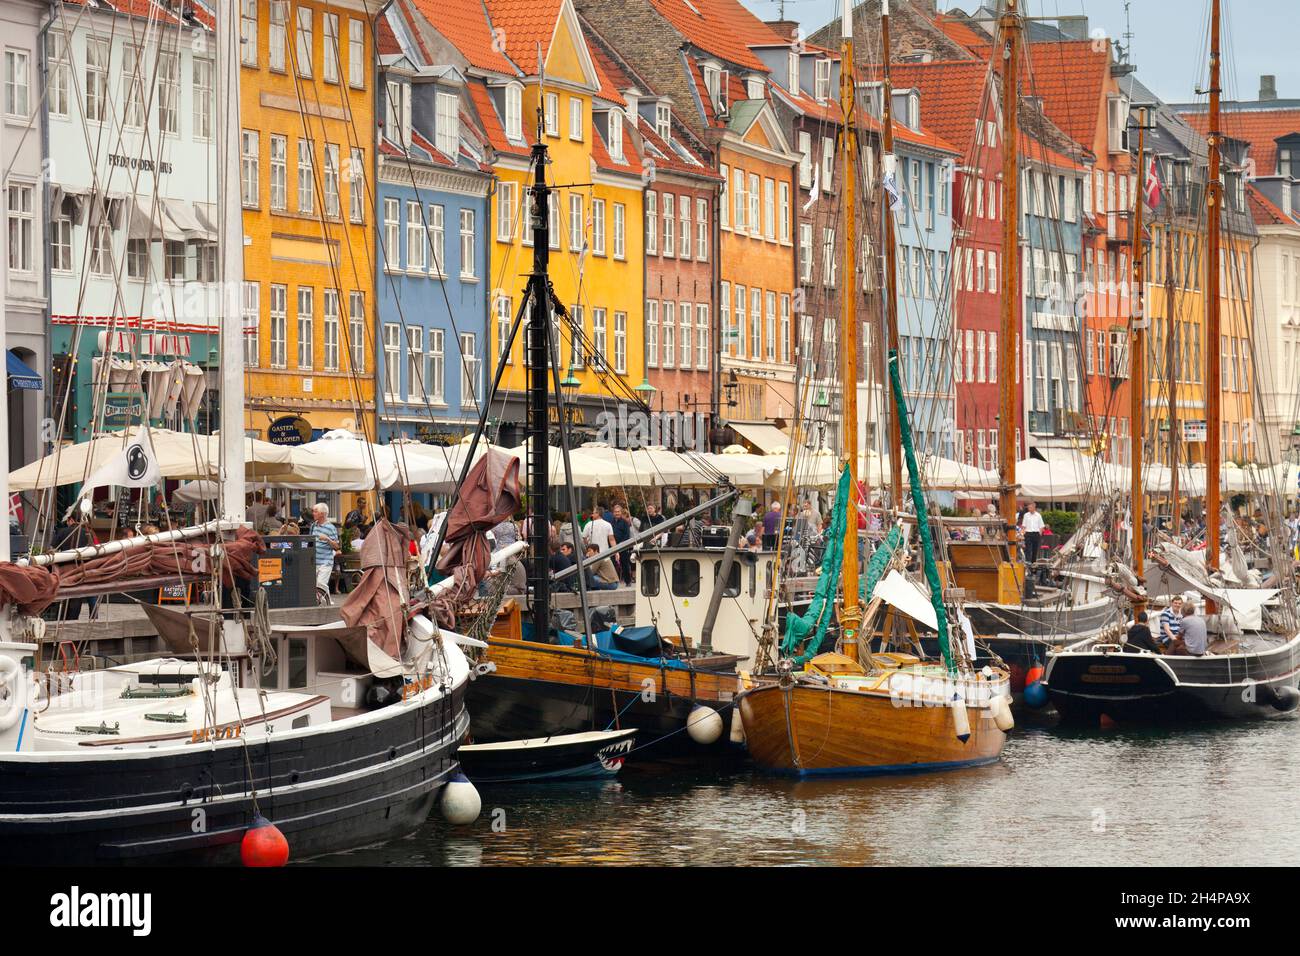 Nyhavn ist ein abgespaltenes Wasser-, Kanal- und Unterhaltungsviertel aus dem 17. Jahrhundert in Kopenhagen, Dänemark. Gesäumt von farbenfrohen Farben des 17. Und frühen 18. Jahrhunderts Stockfoto